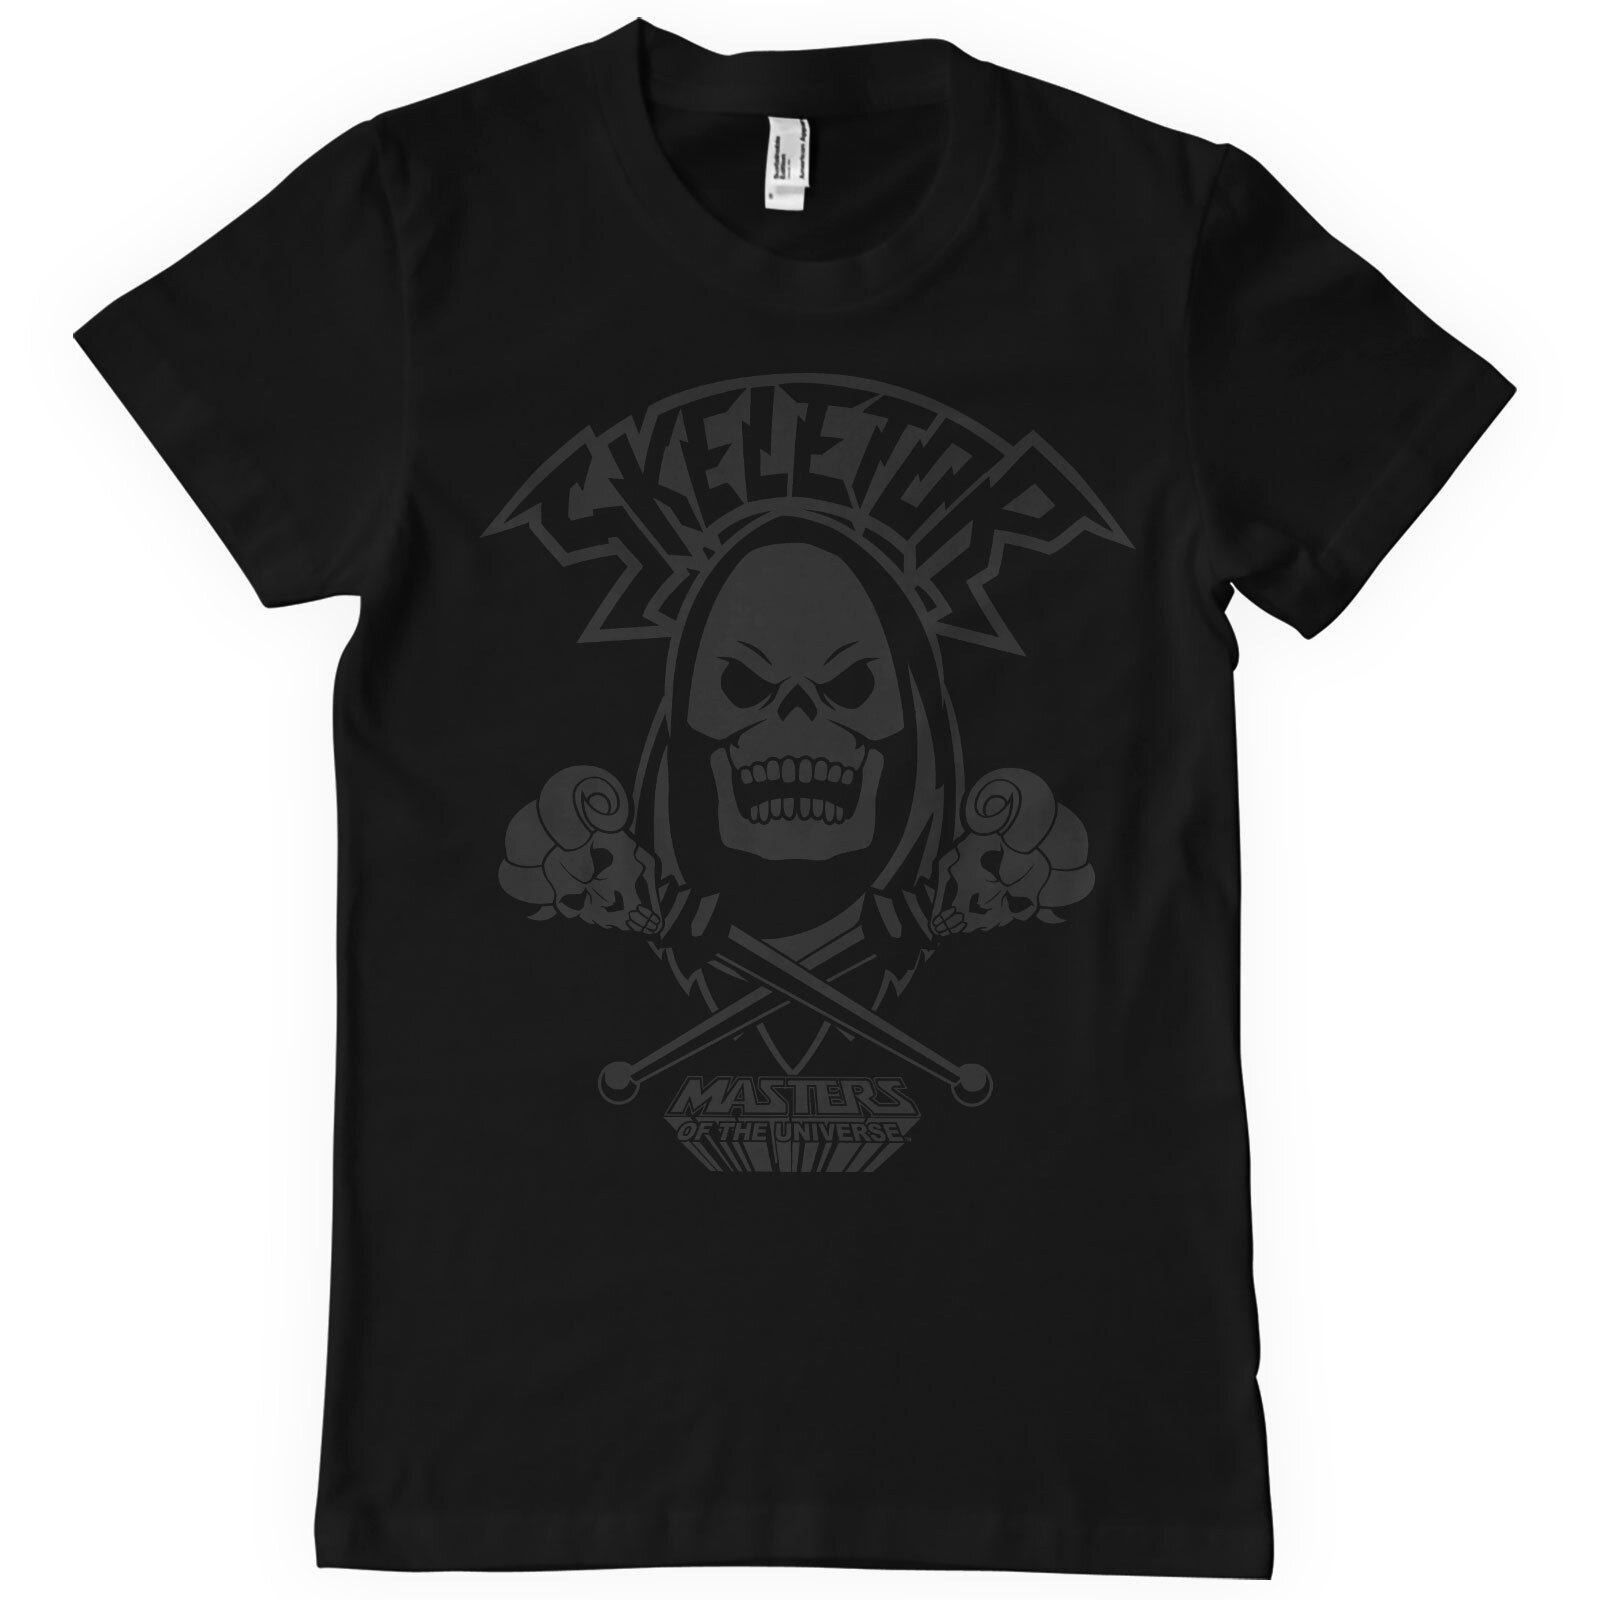 Skeletor Black On Black T-Shirt